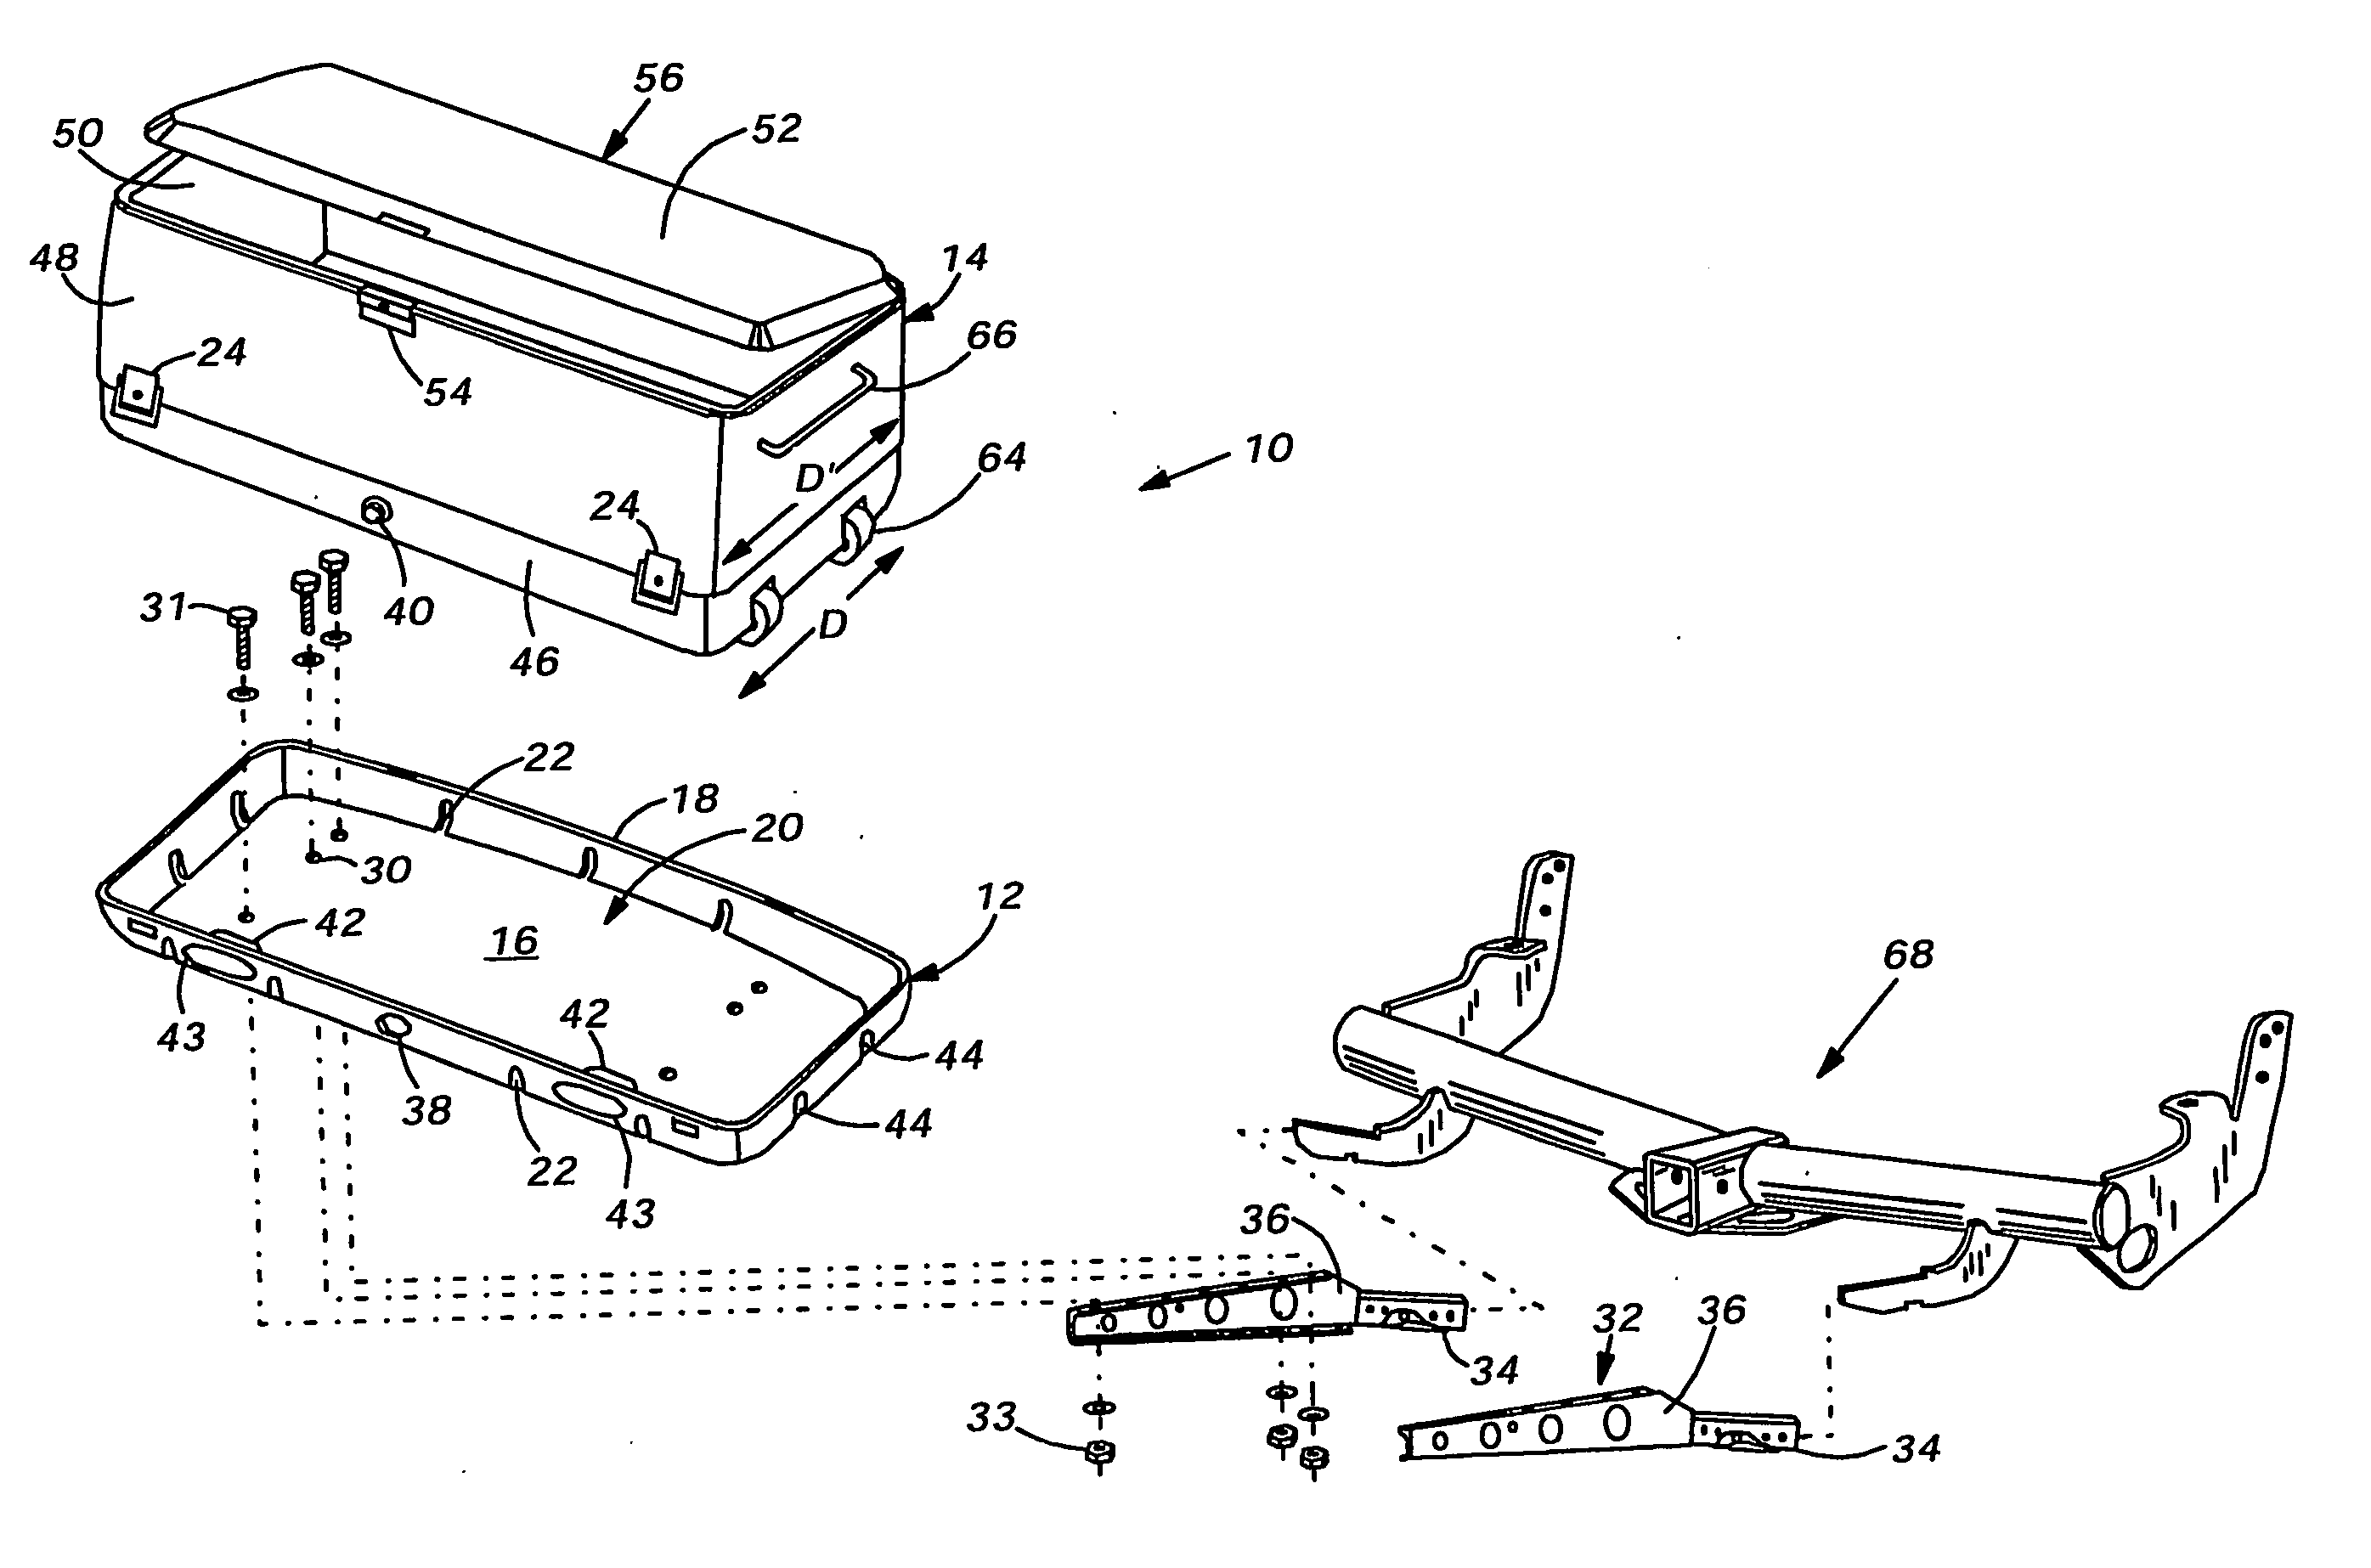 Modular cargo carrier assembly